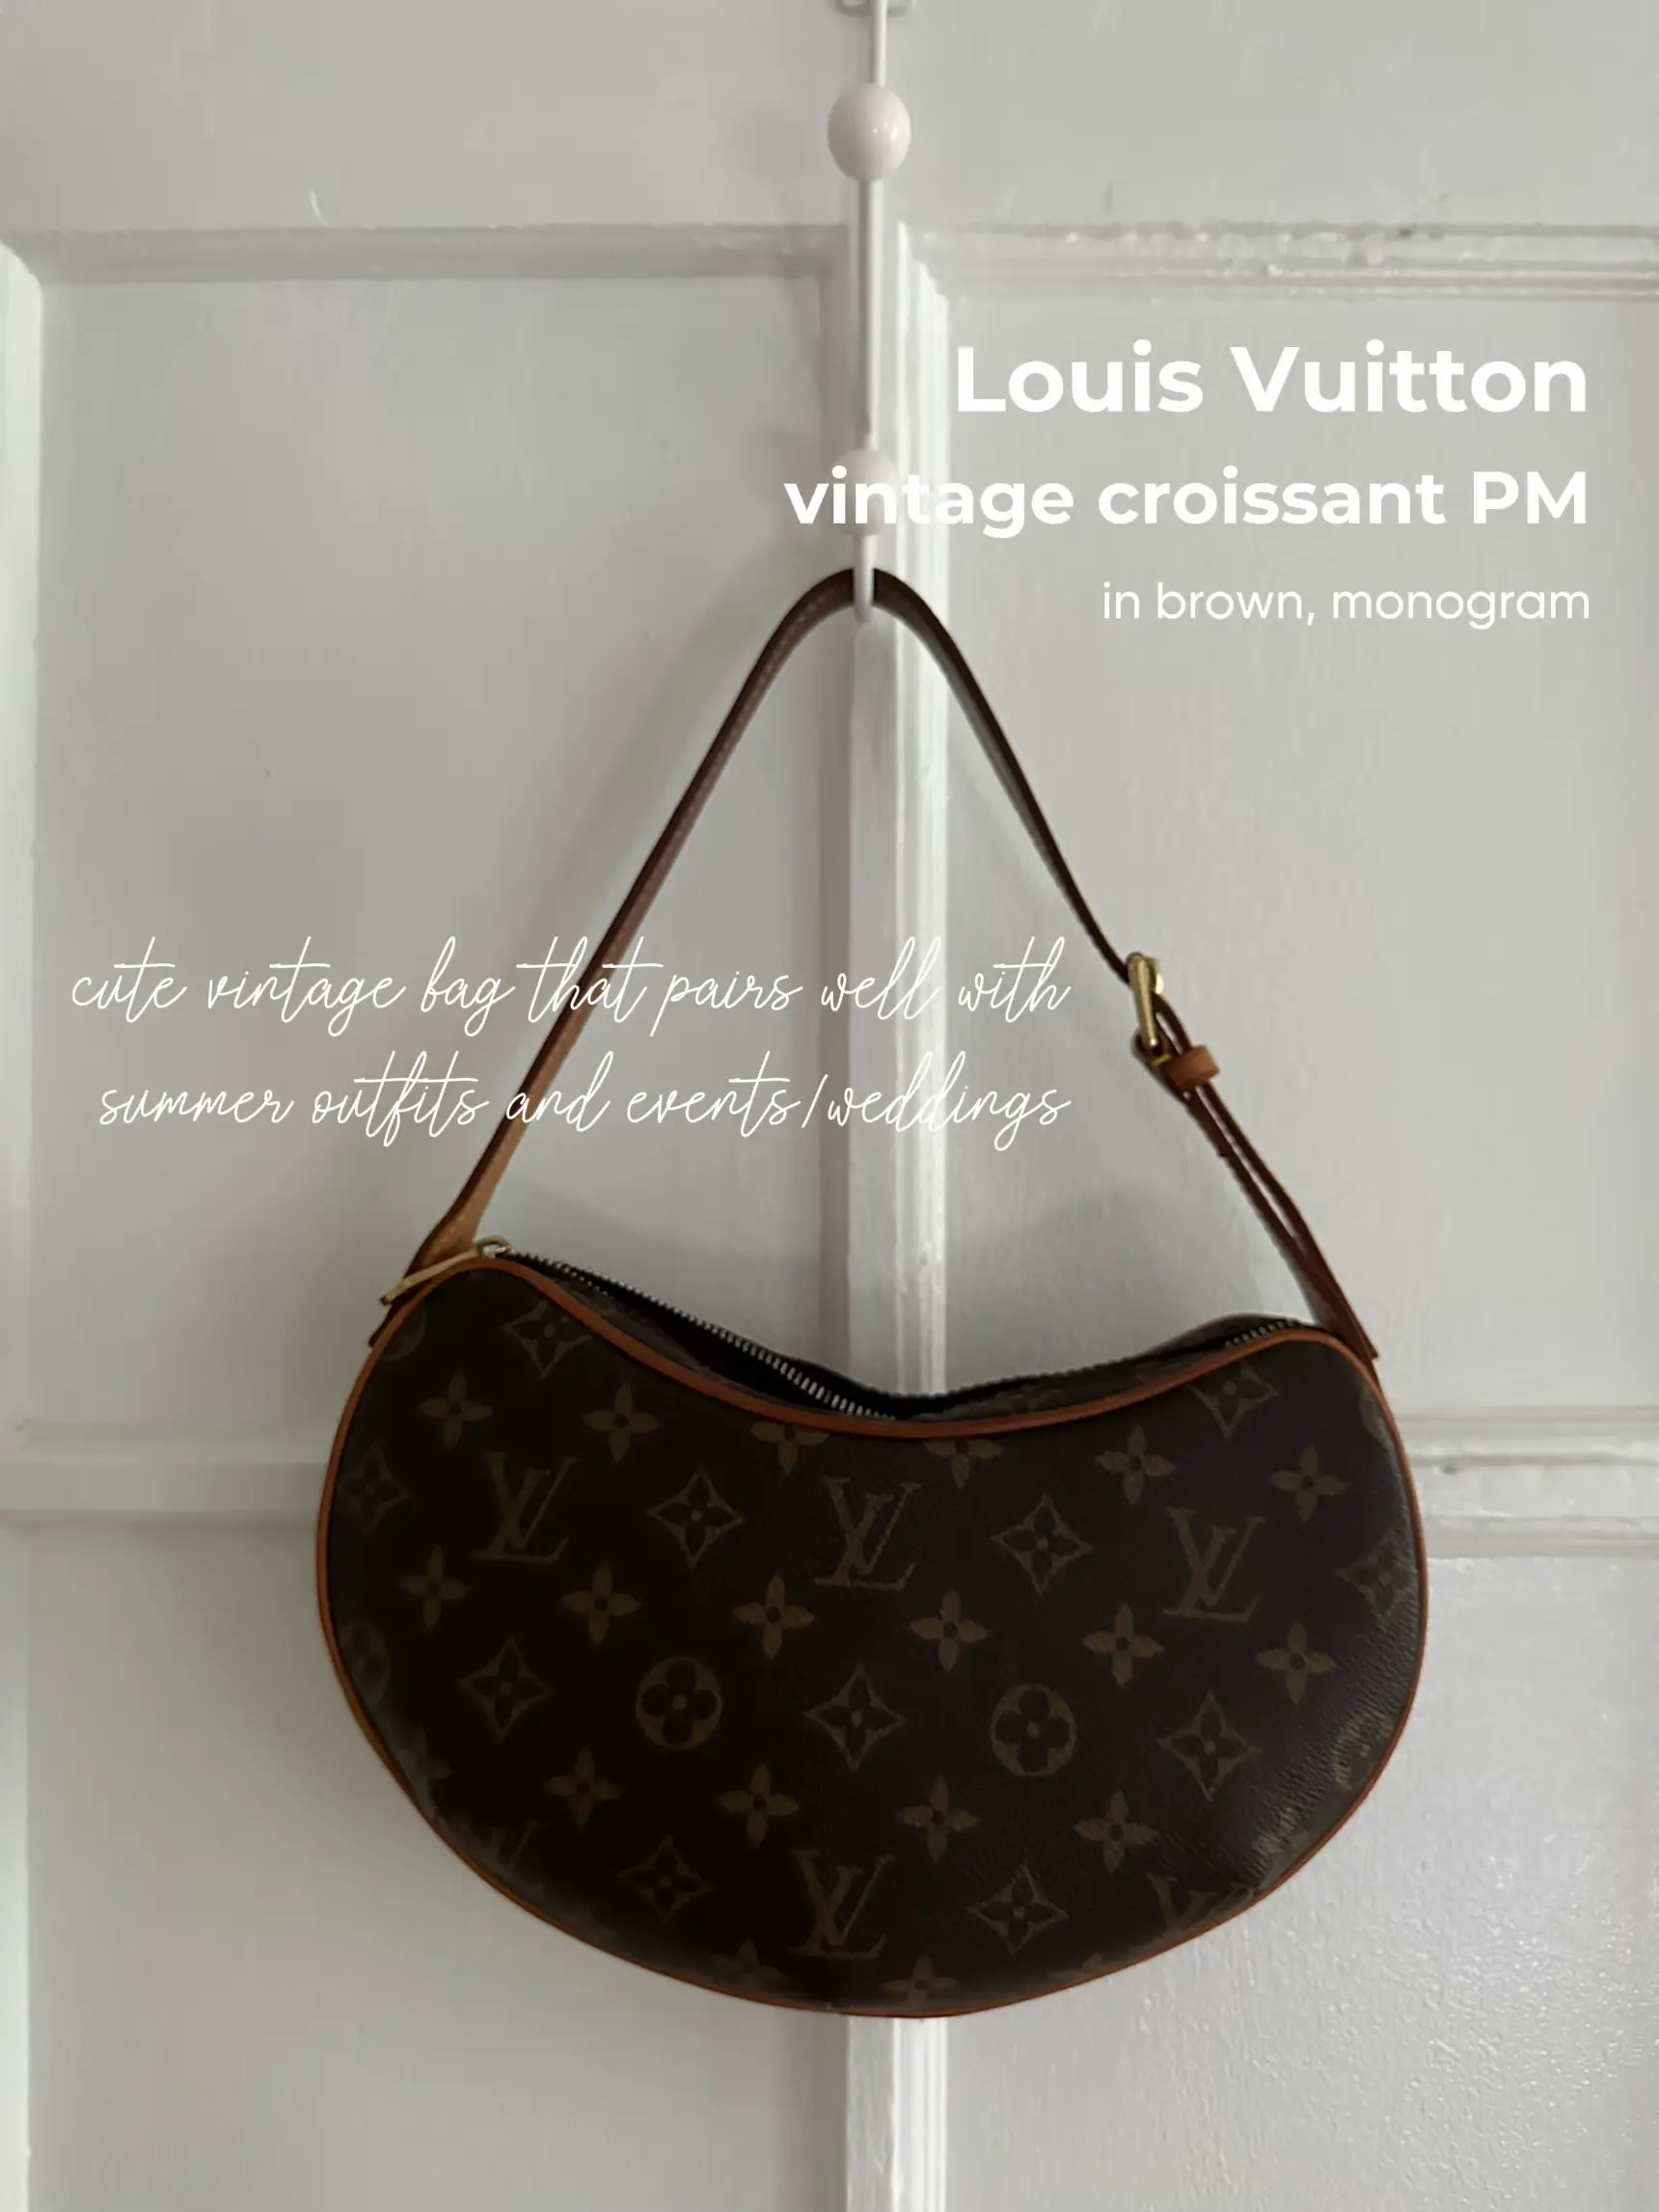 LOUIS VUITTON Monogram Canvas Croissant PM Bag - Final Call